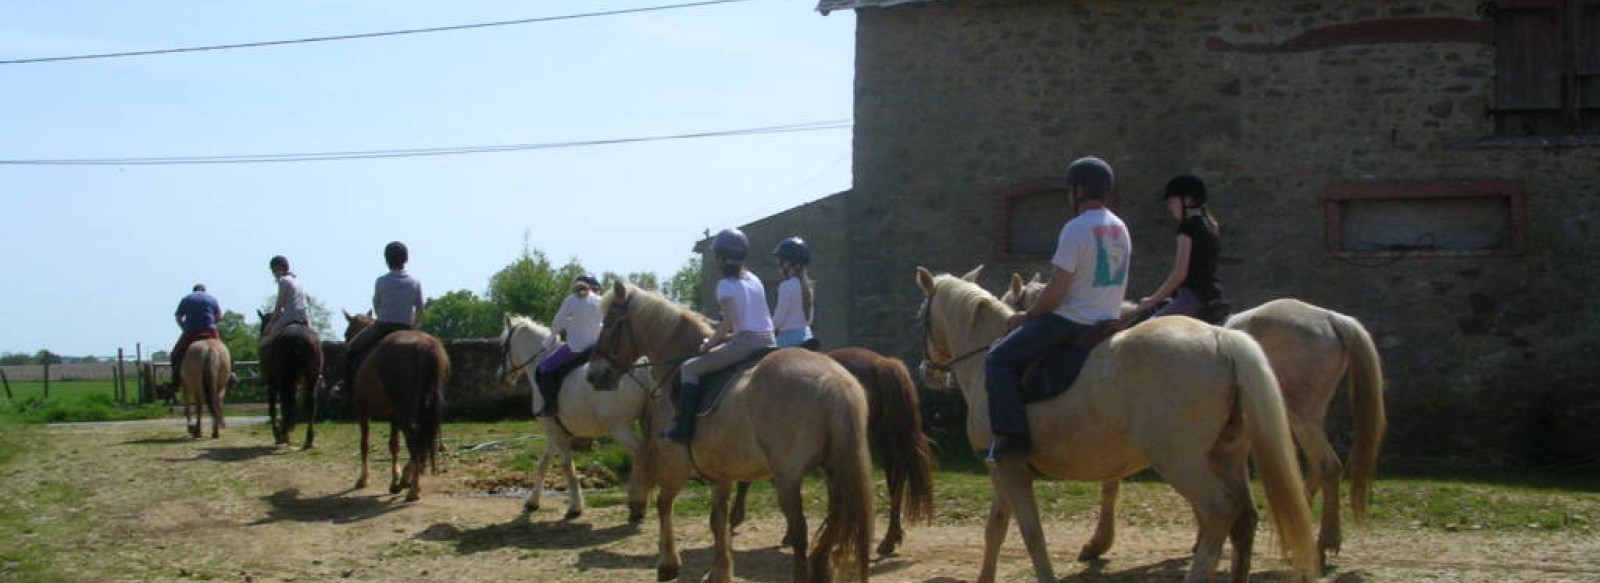 Equitation - Ferme equestre du Mont Cruchet